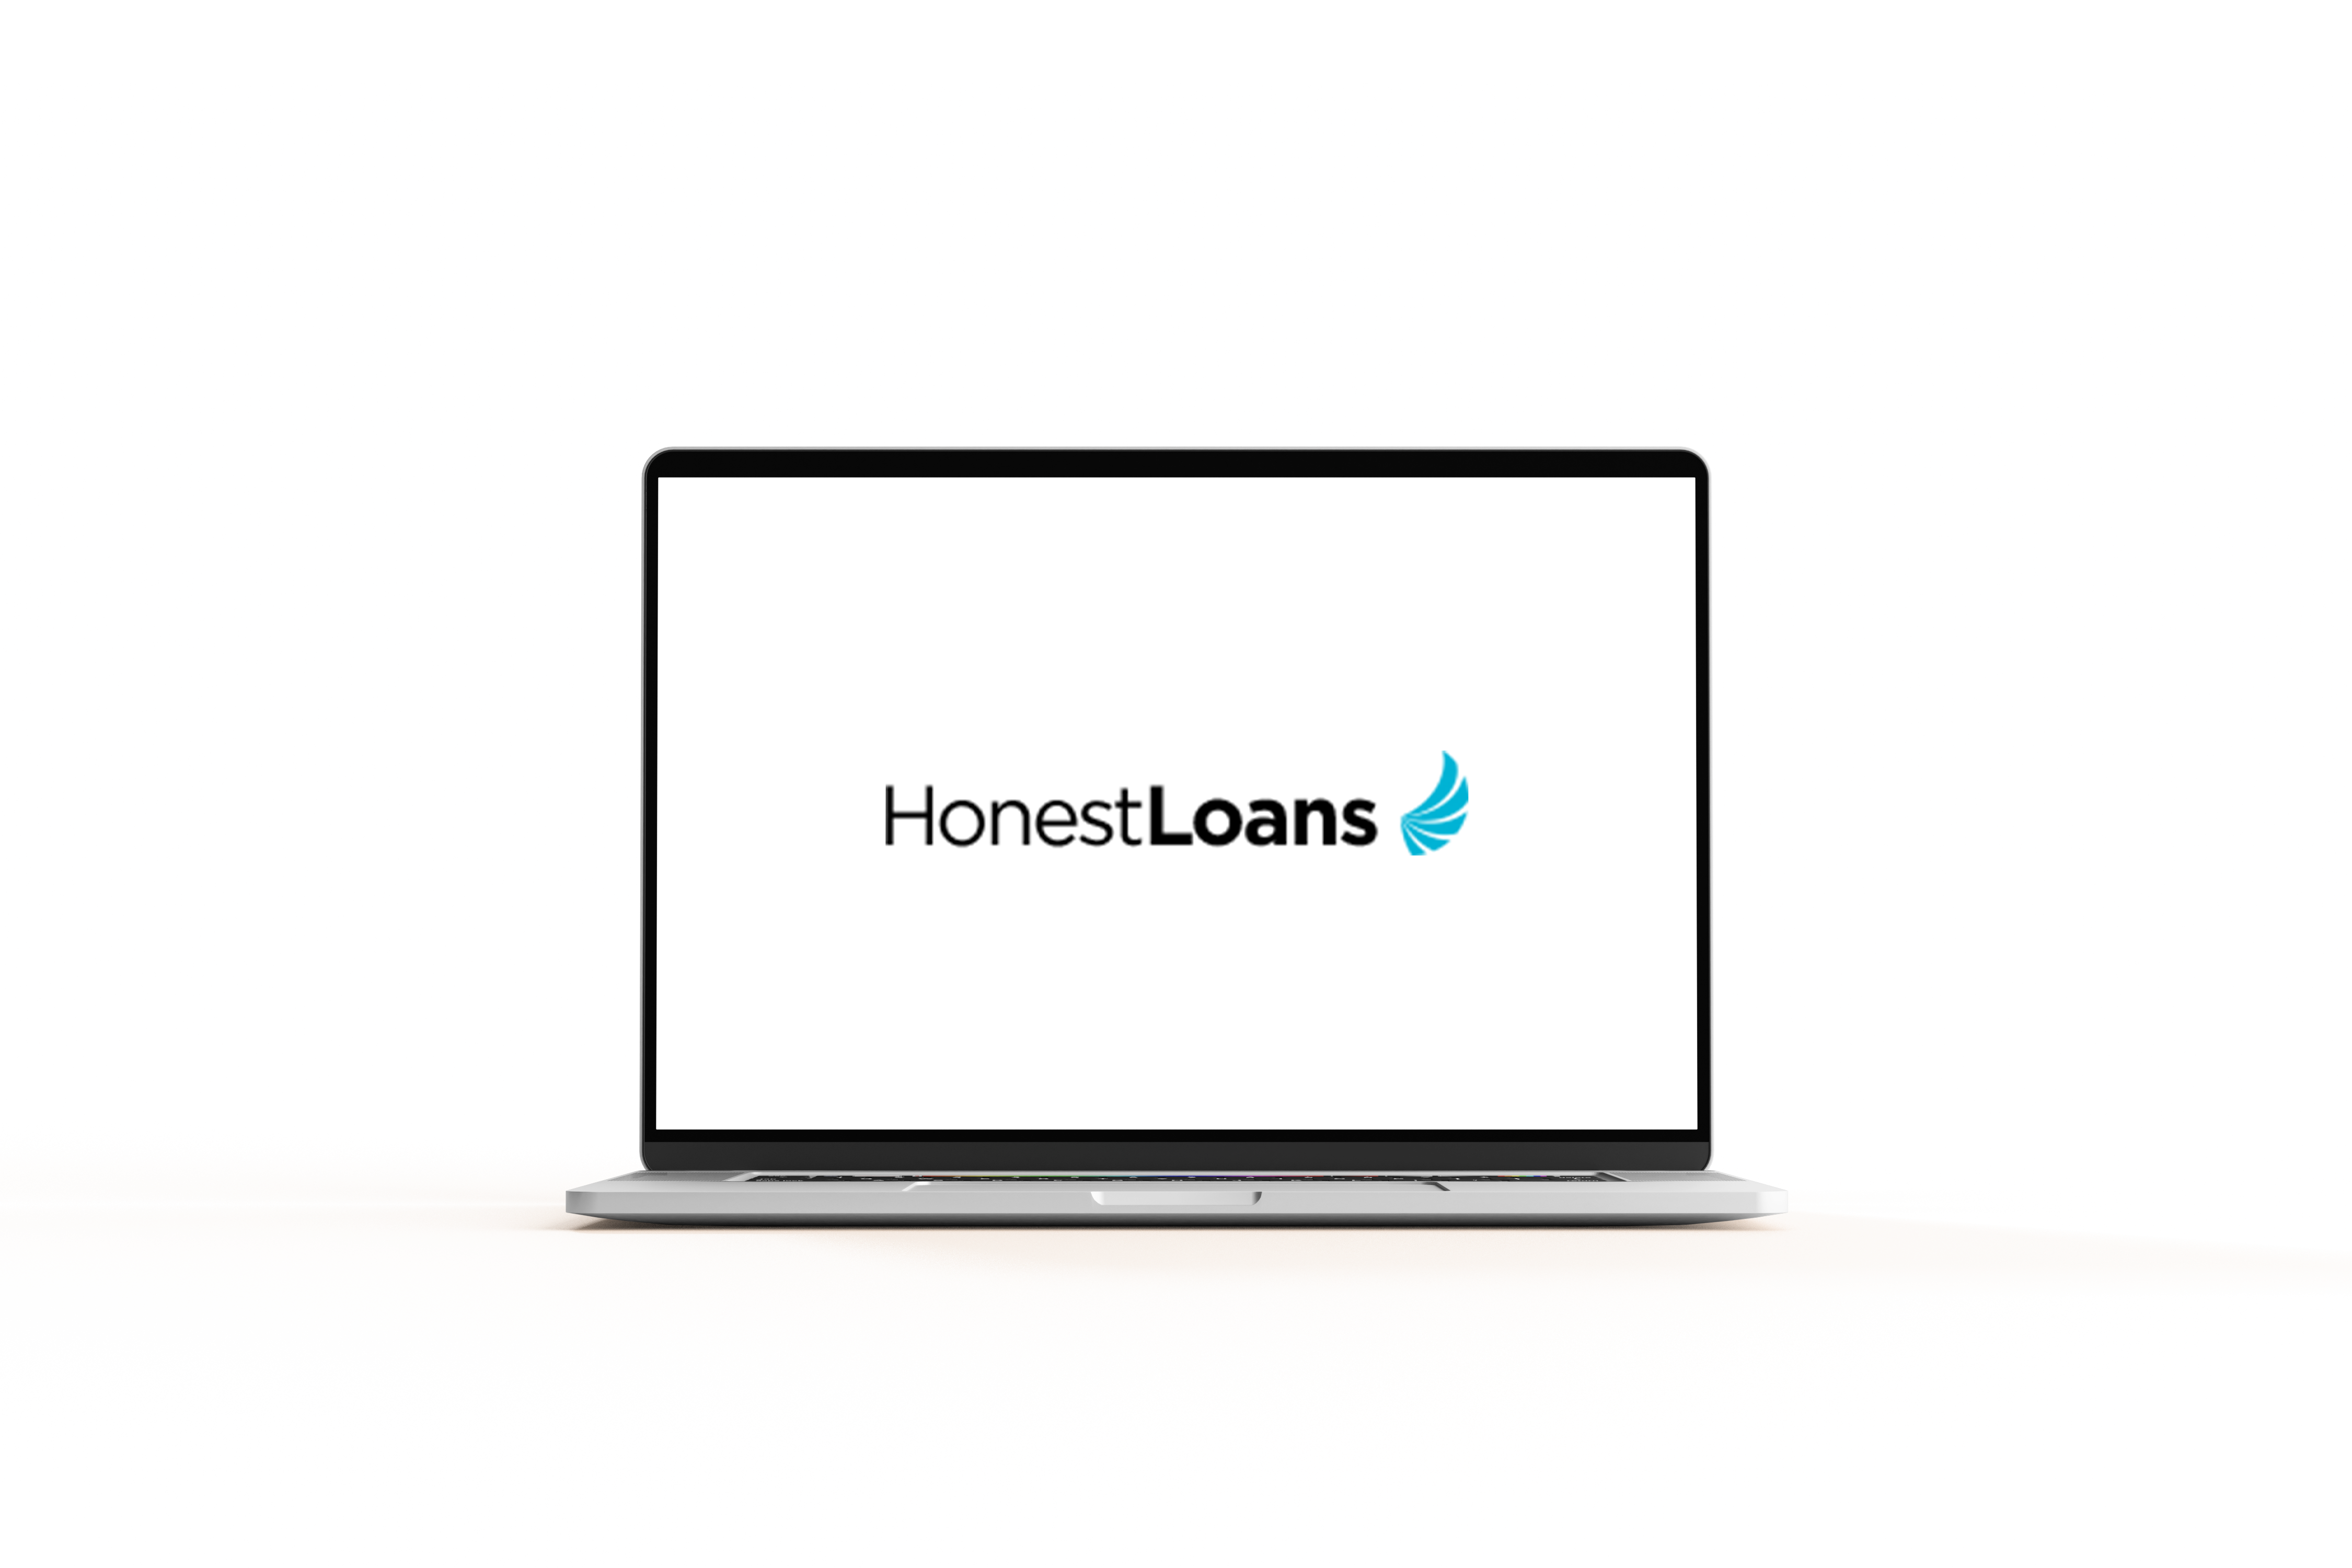 Logo Honest Loans em computador